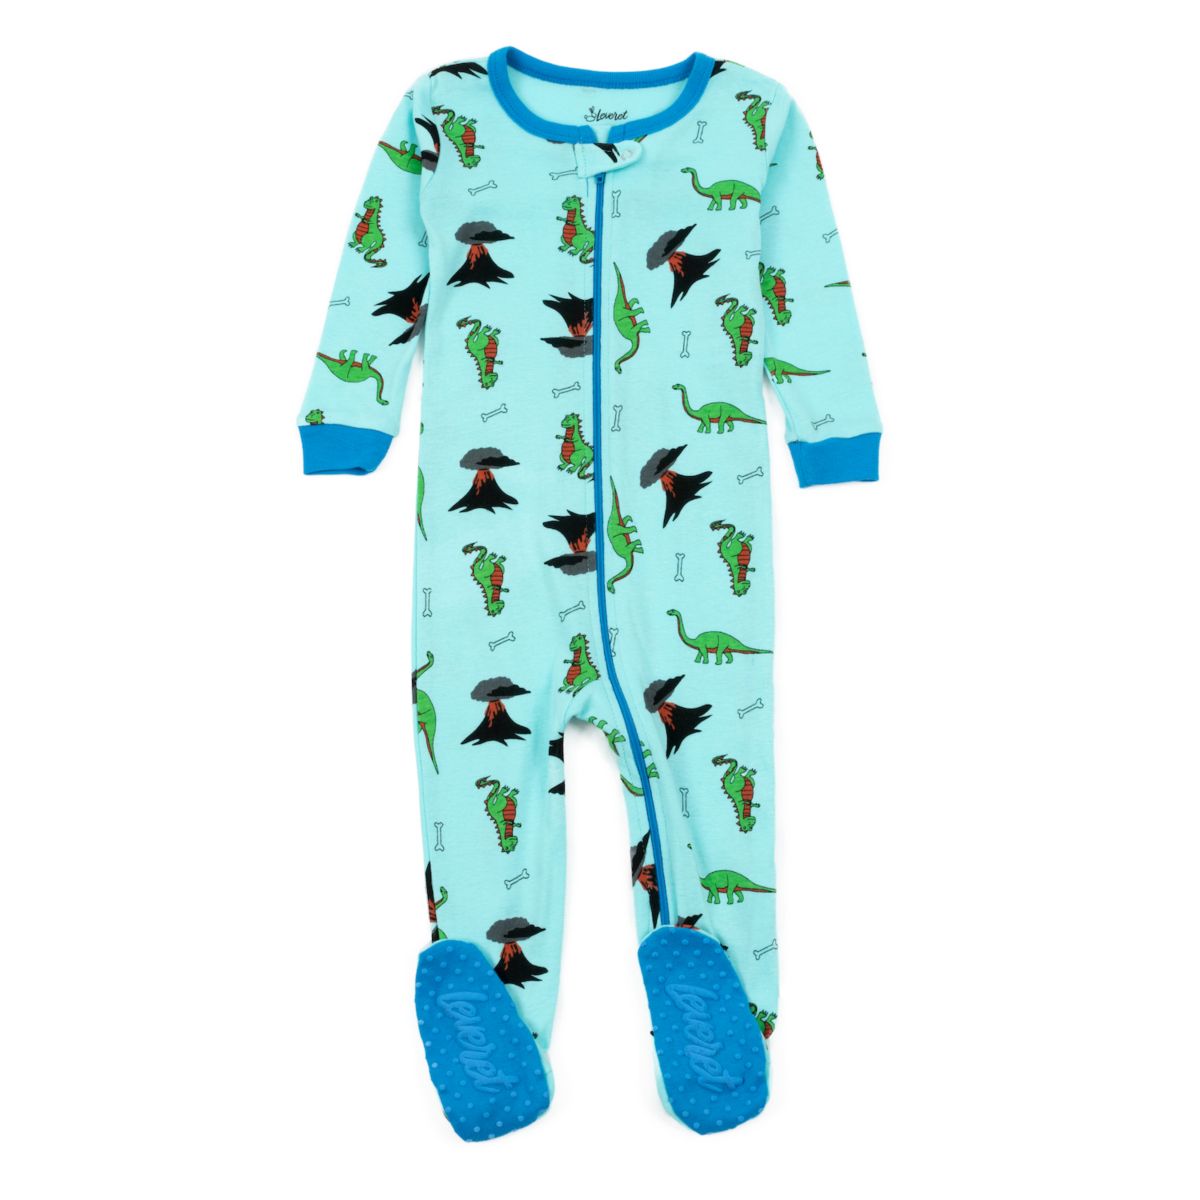 Leveret Kids Хлопковая пижама с динозавром на ногах, синяя, 5 лет Leveret